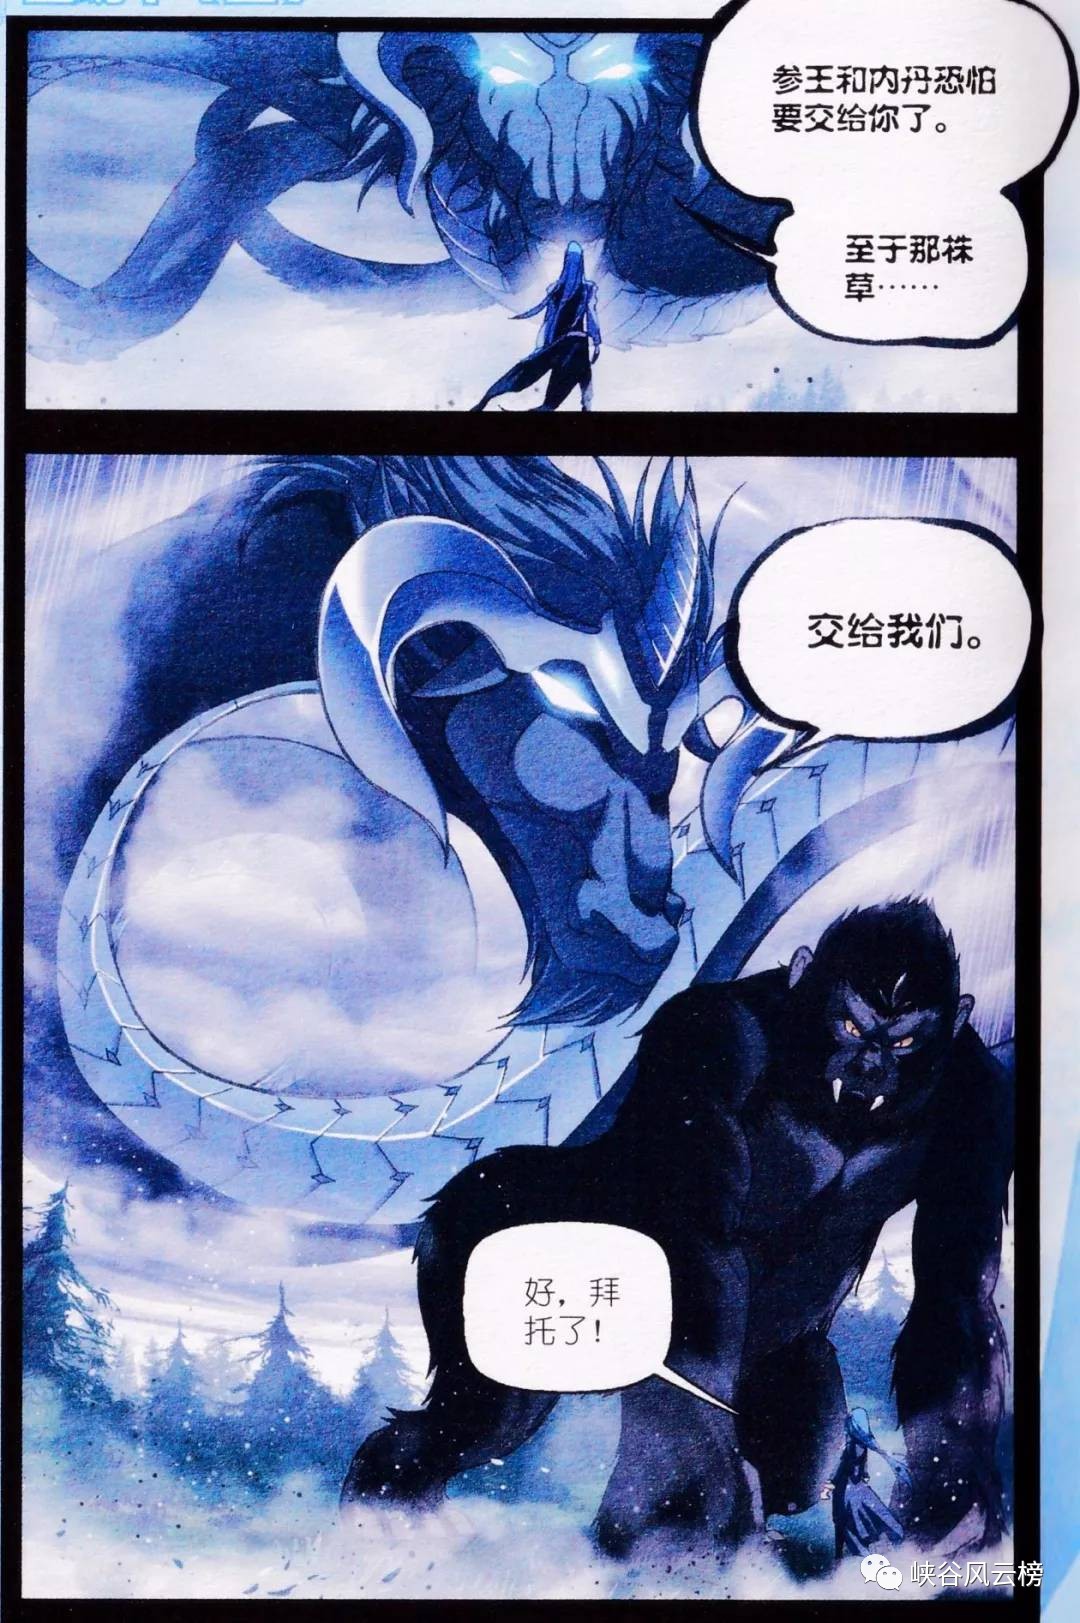 斗罗大陆圣魂草番外漫画第1话:天青牛蟒联手泰坦巨猿vs圣魂王